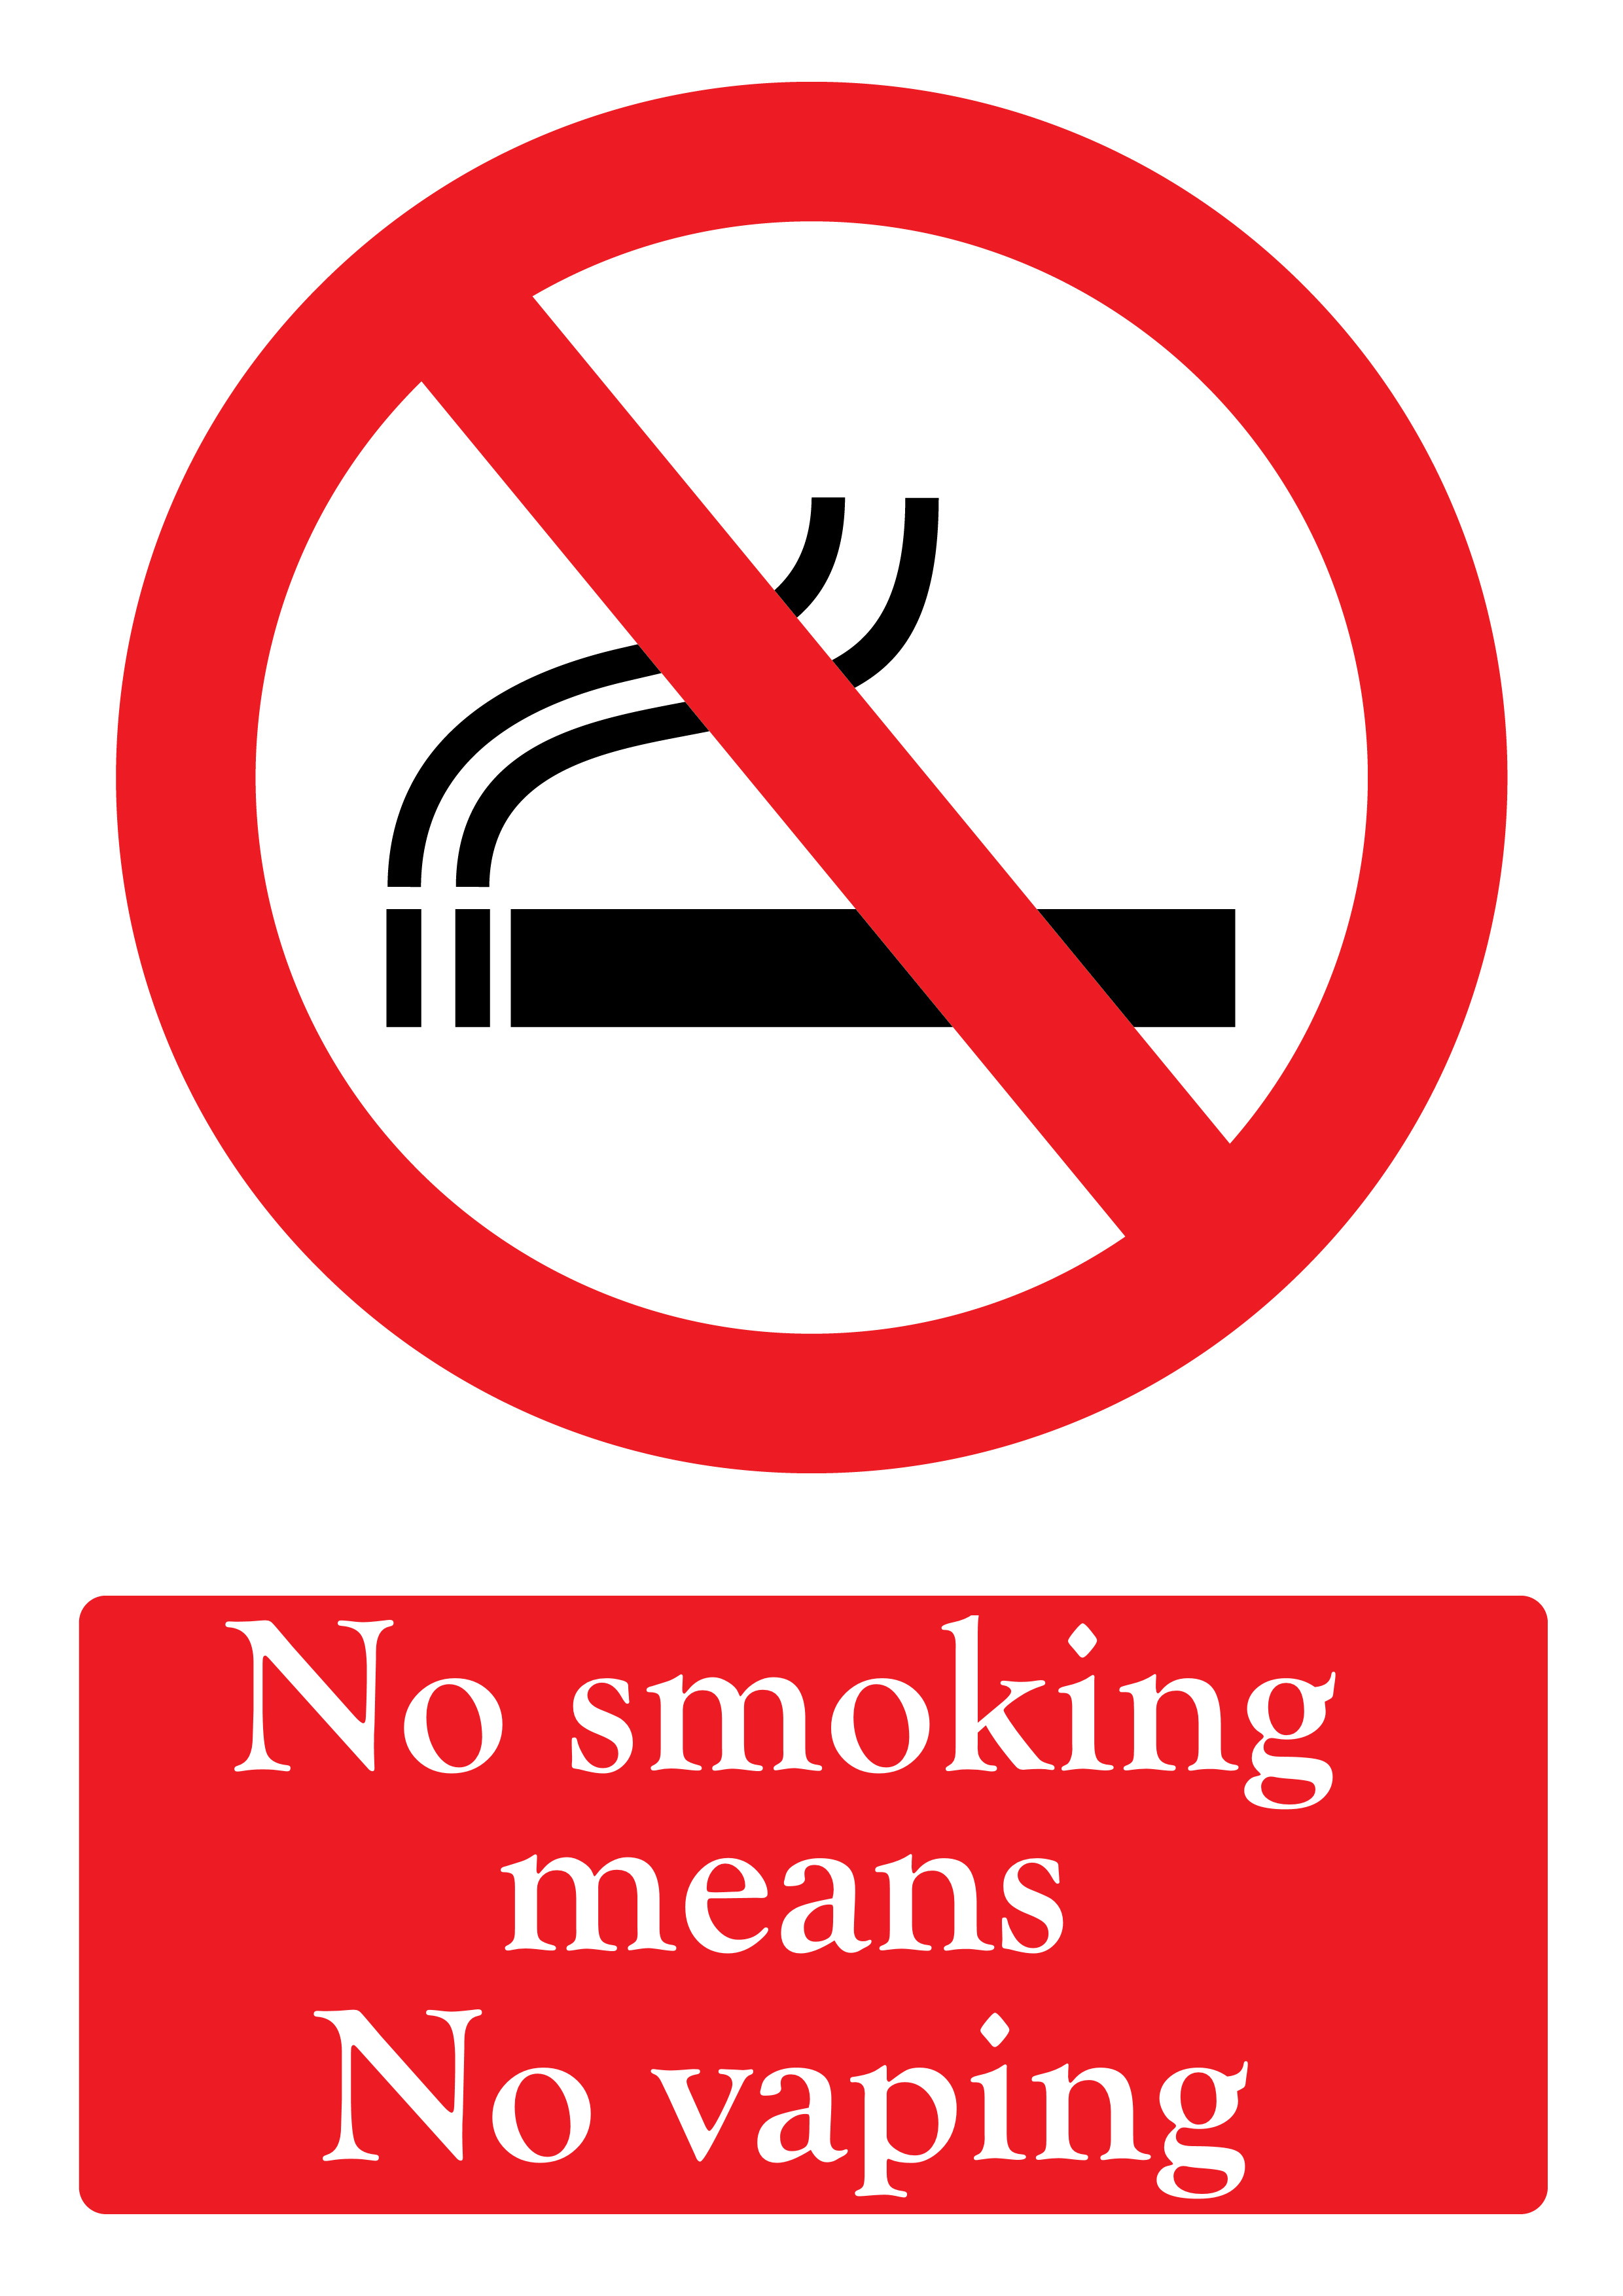 No smoking means no vaping